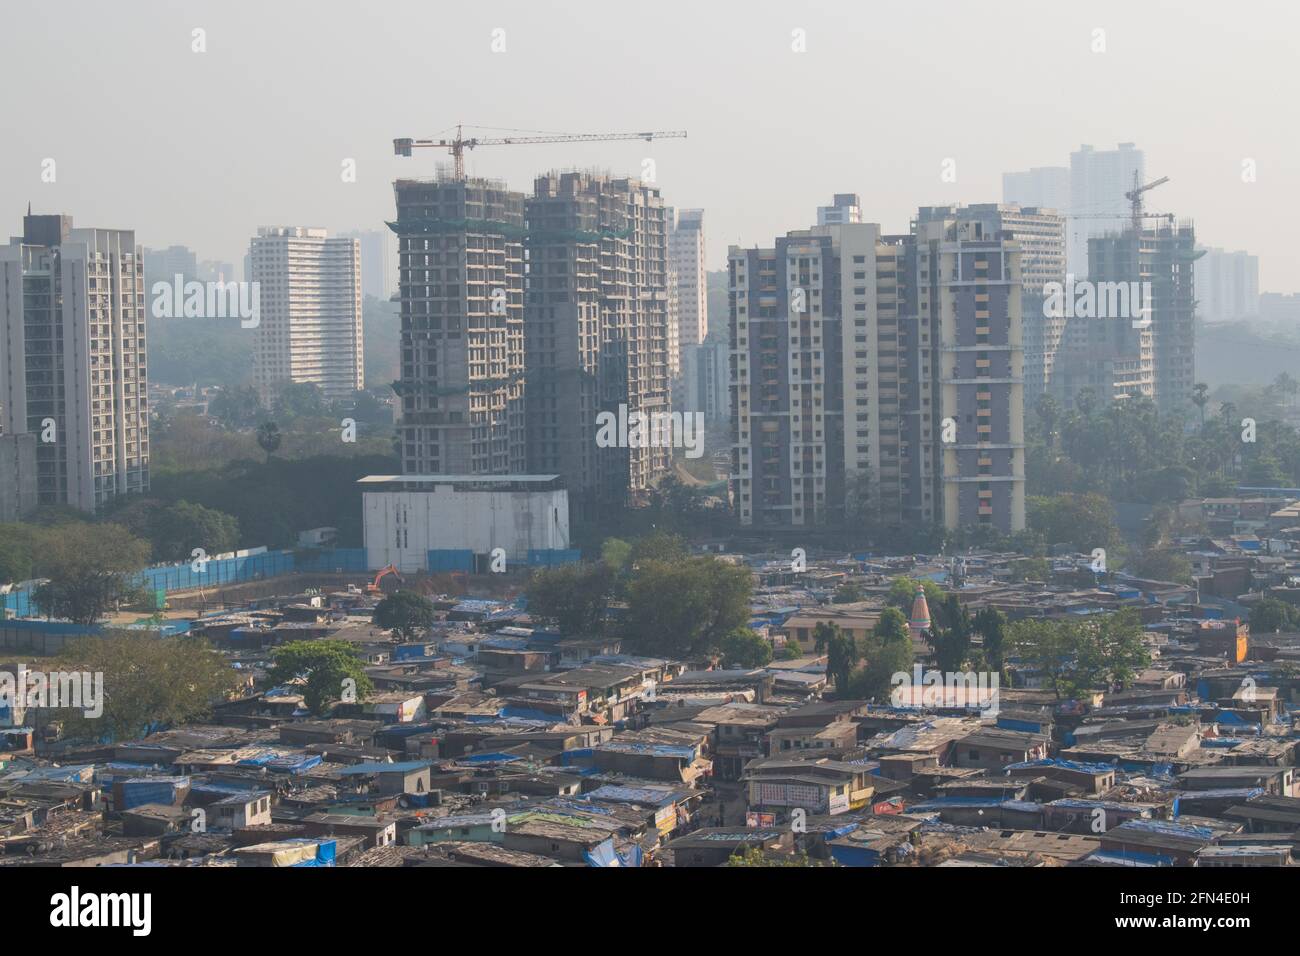 Slum Sanierung von mumbai maharashtra mit Türmen und Slums in Ein Bild Stockfoto